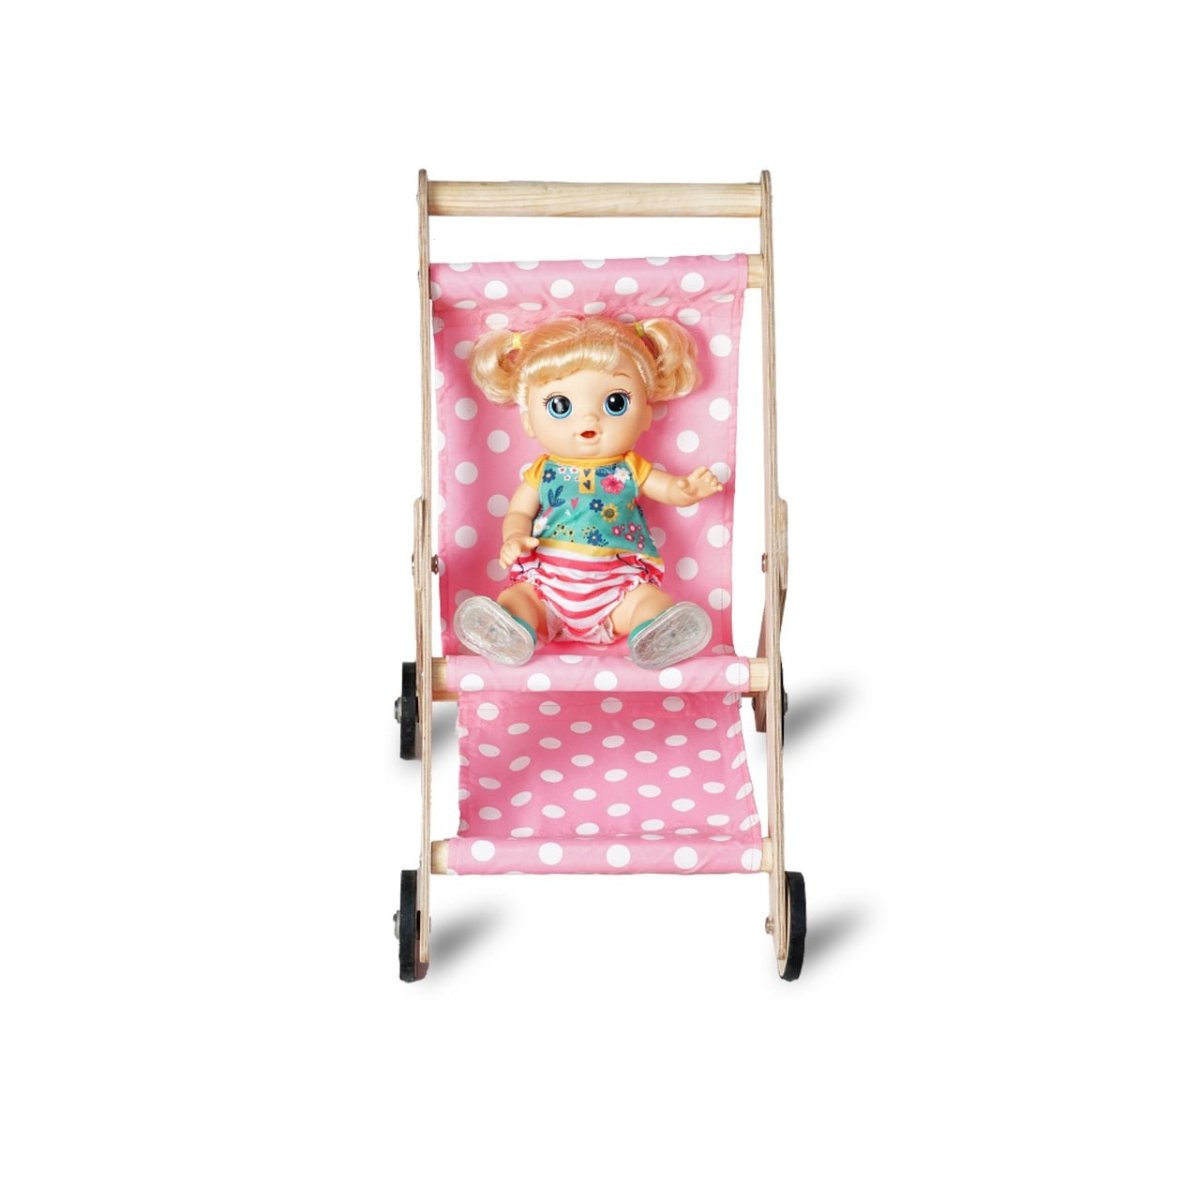 CuddlyCoo Wooden Doll Stroller- Baby pink - CCDOLLSTROLLBP